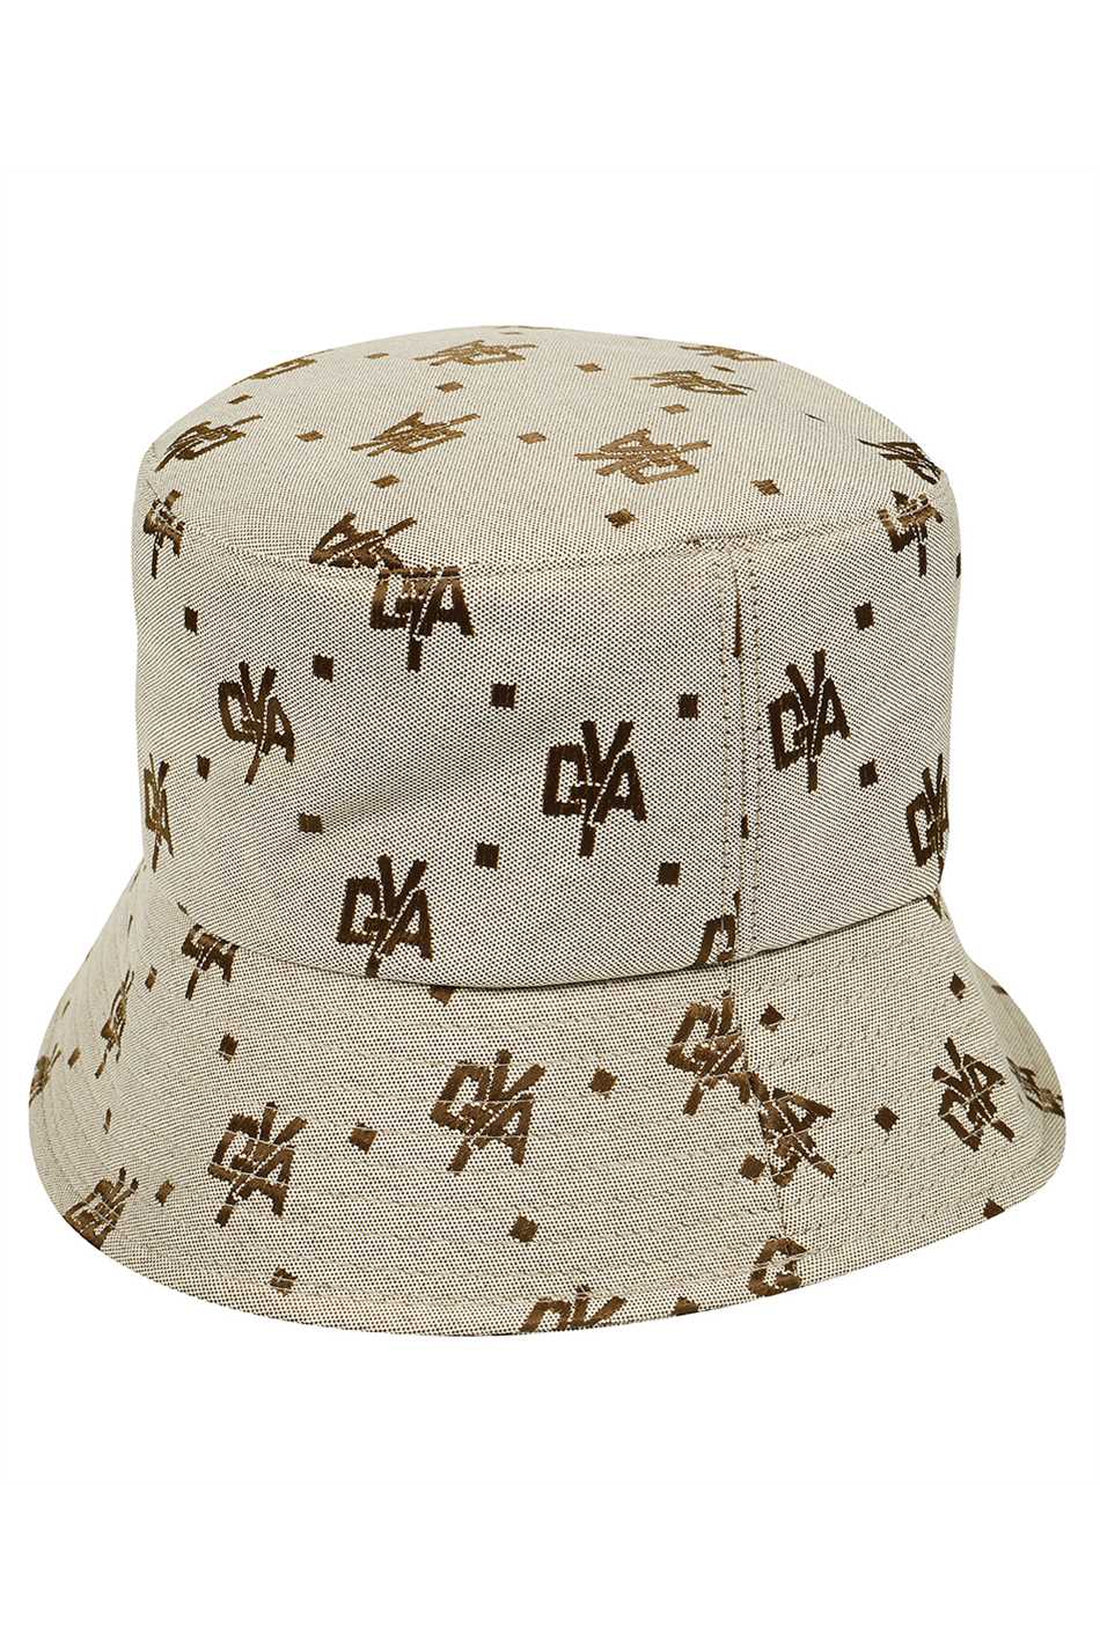 Duvetica-OUTLET-SALE-Solunto bucket hat-ARCHIVIST